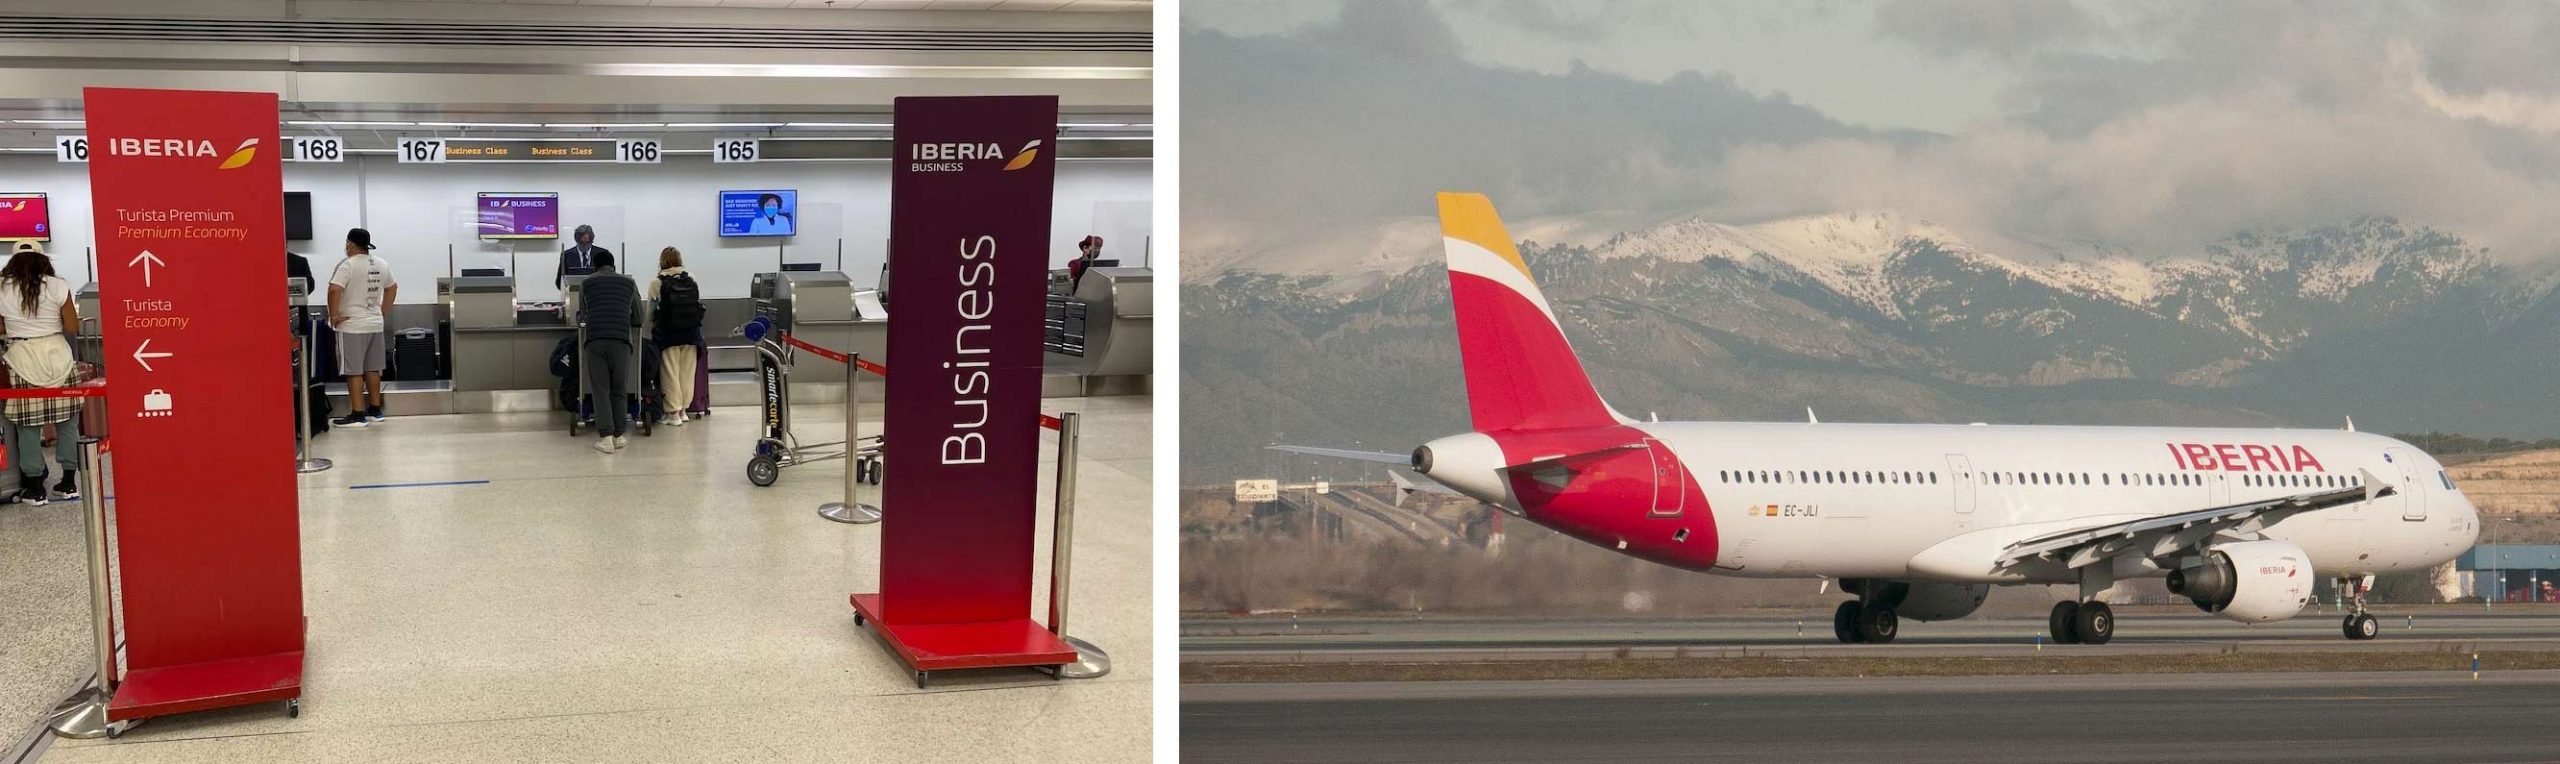 Iberia miami airport